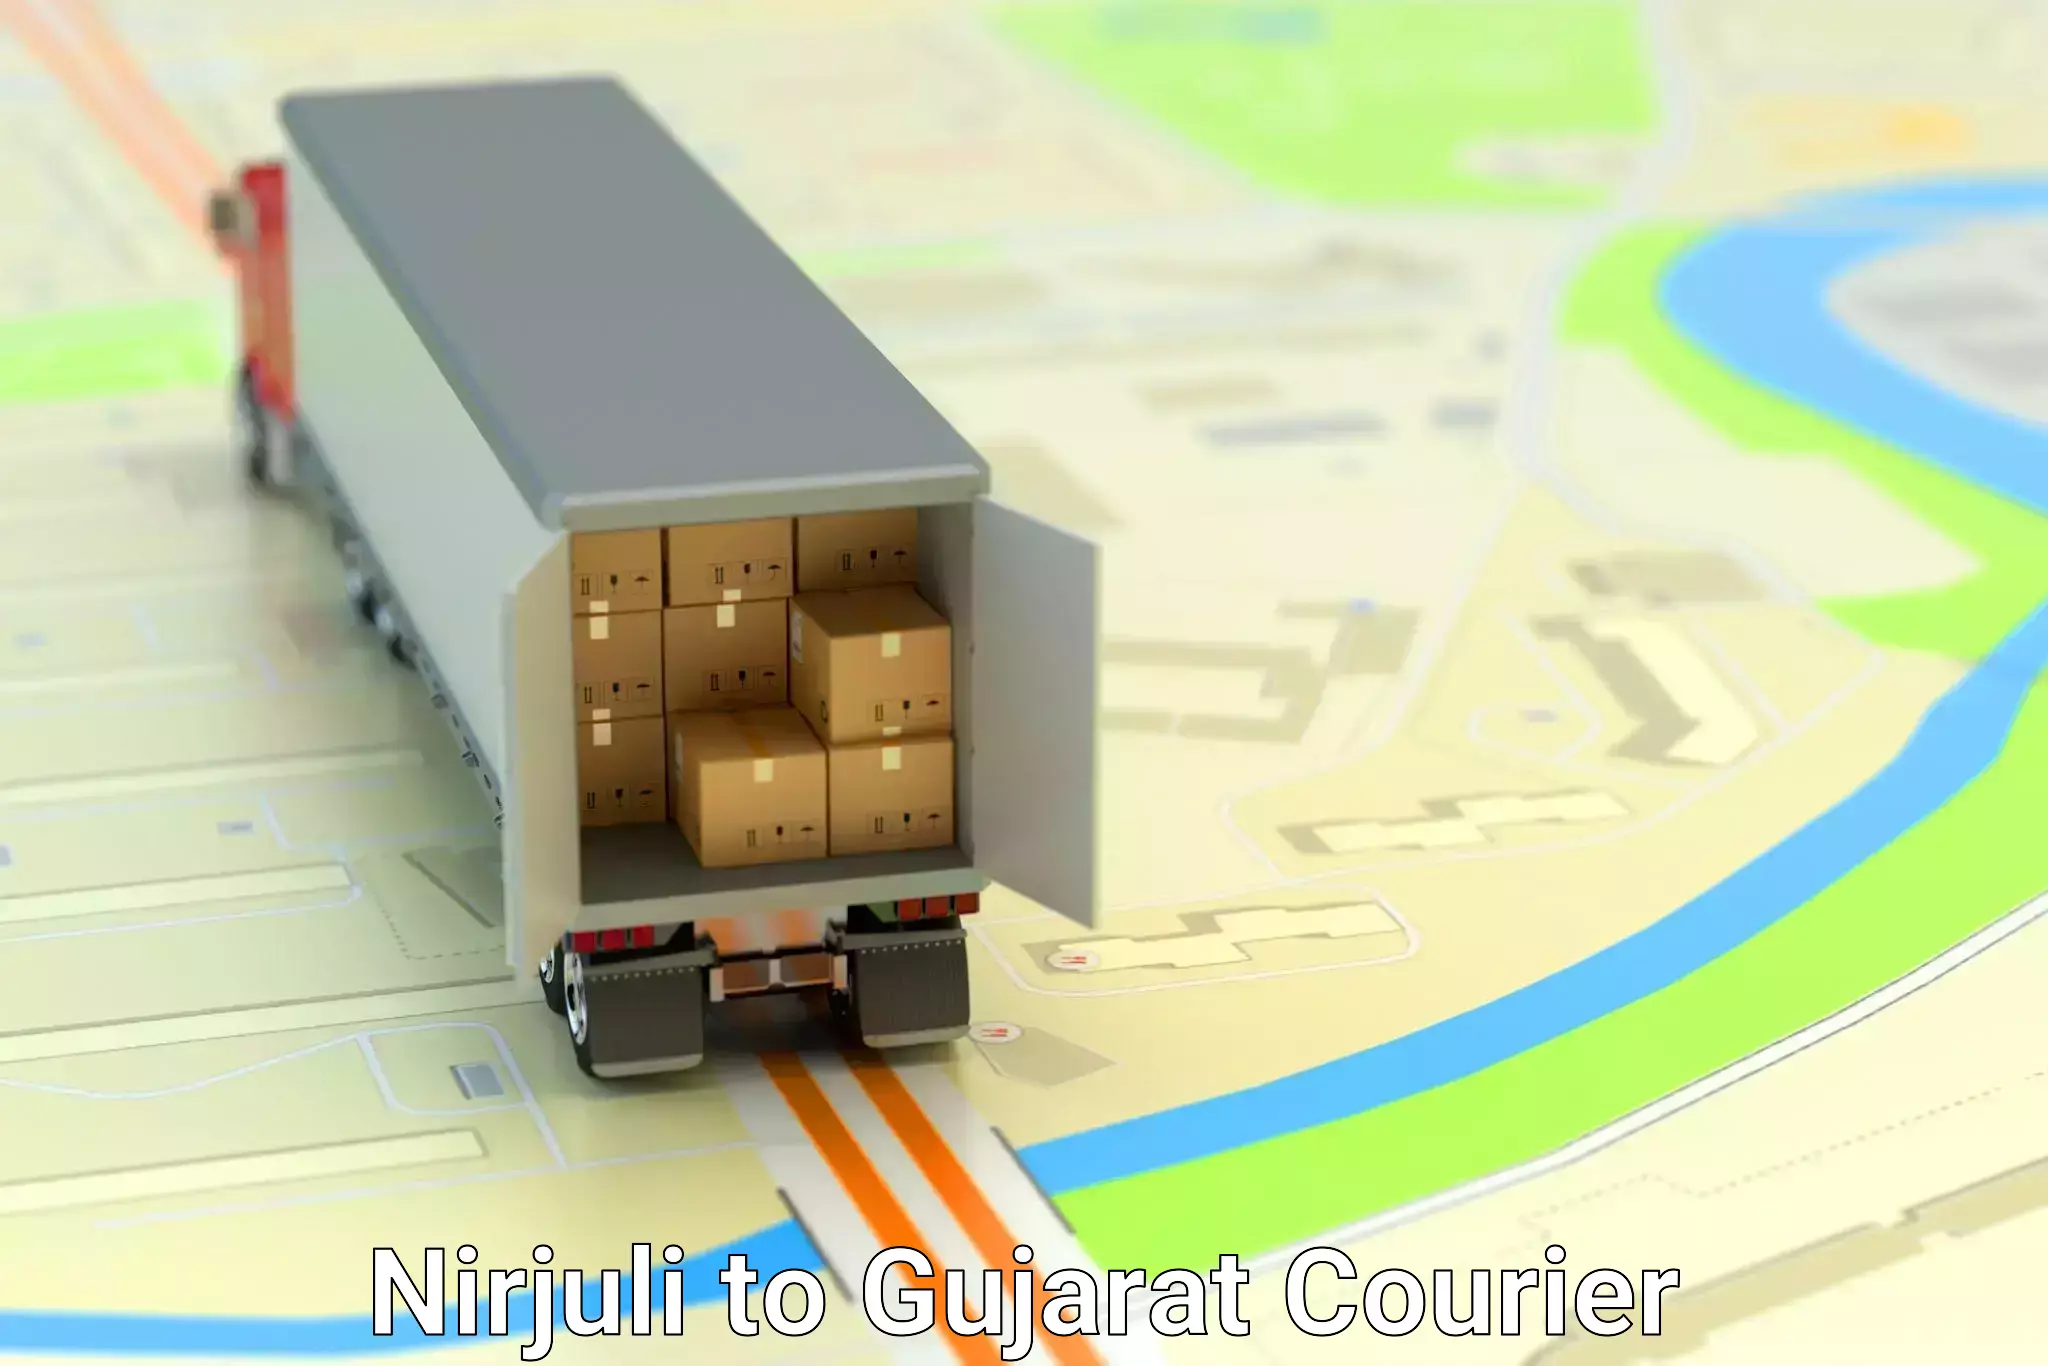 Customer-centric shipping Nirjuli to Jasdan